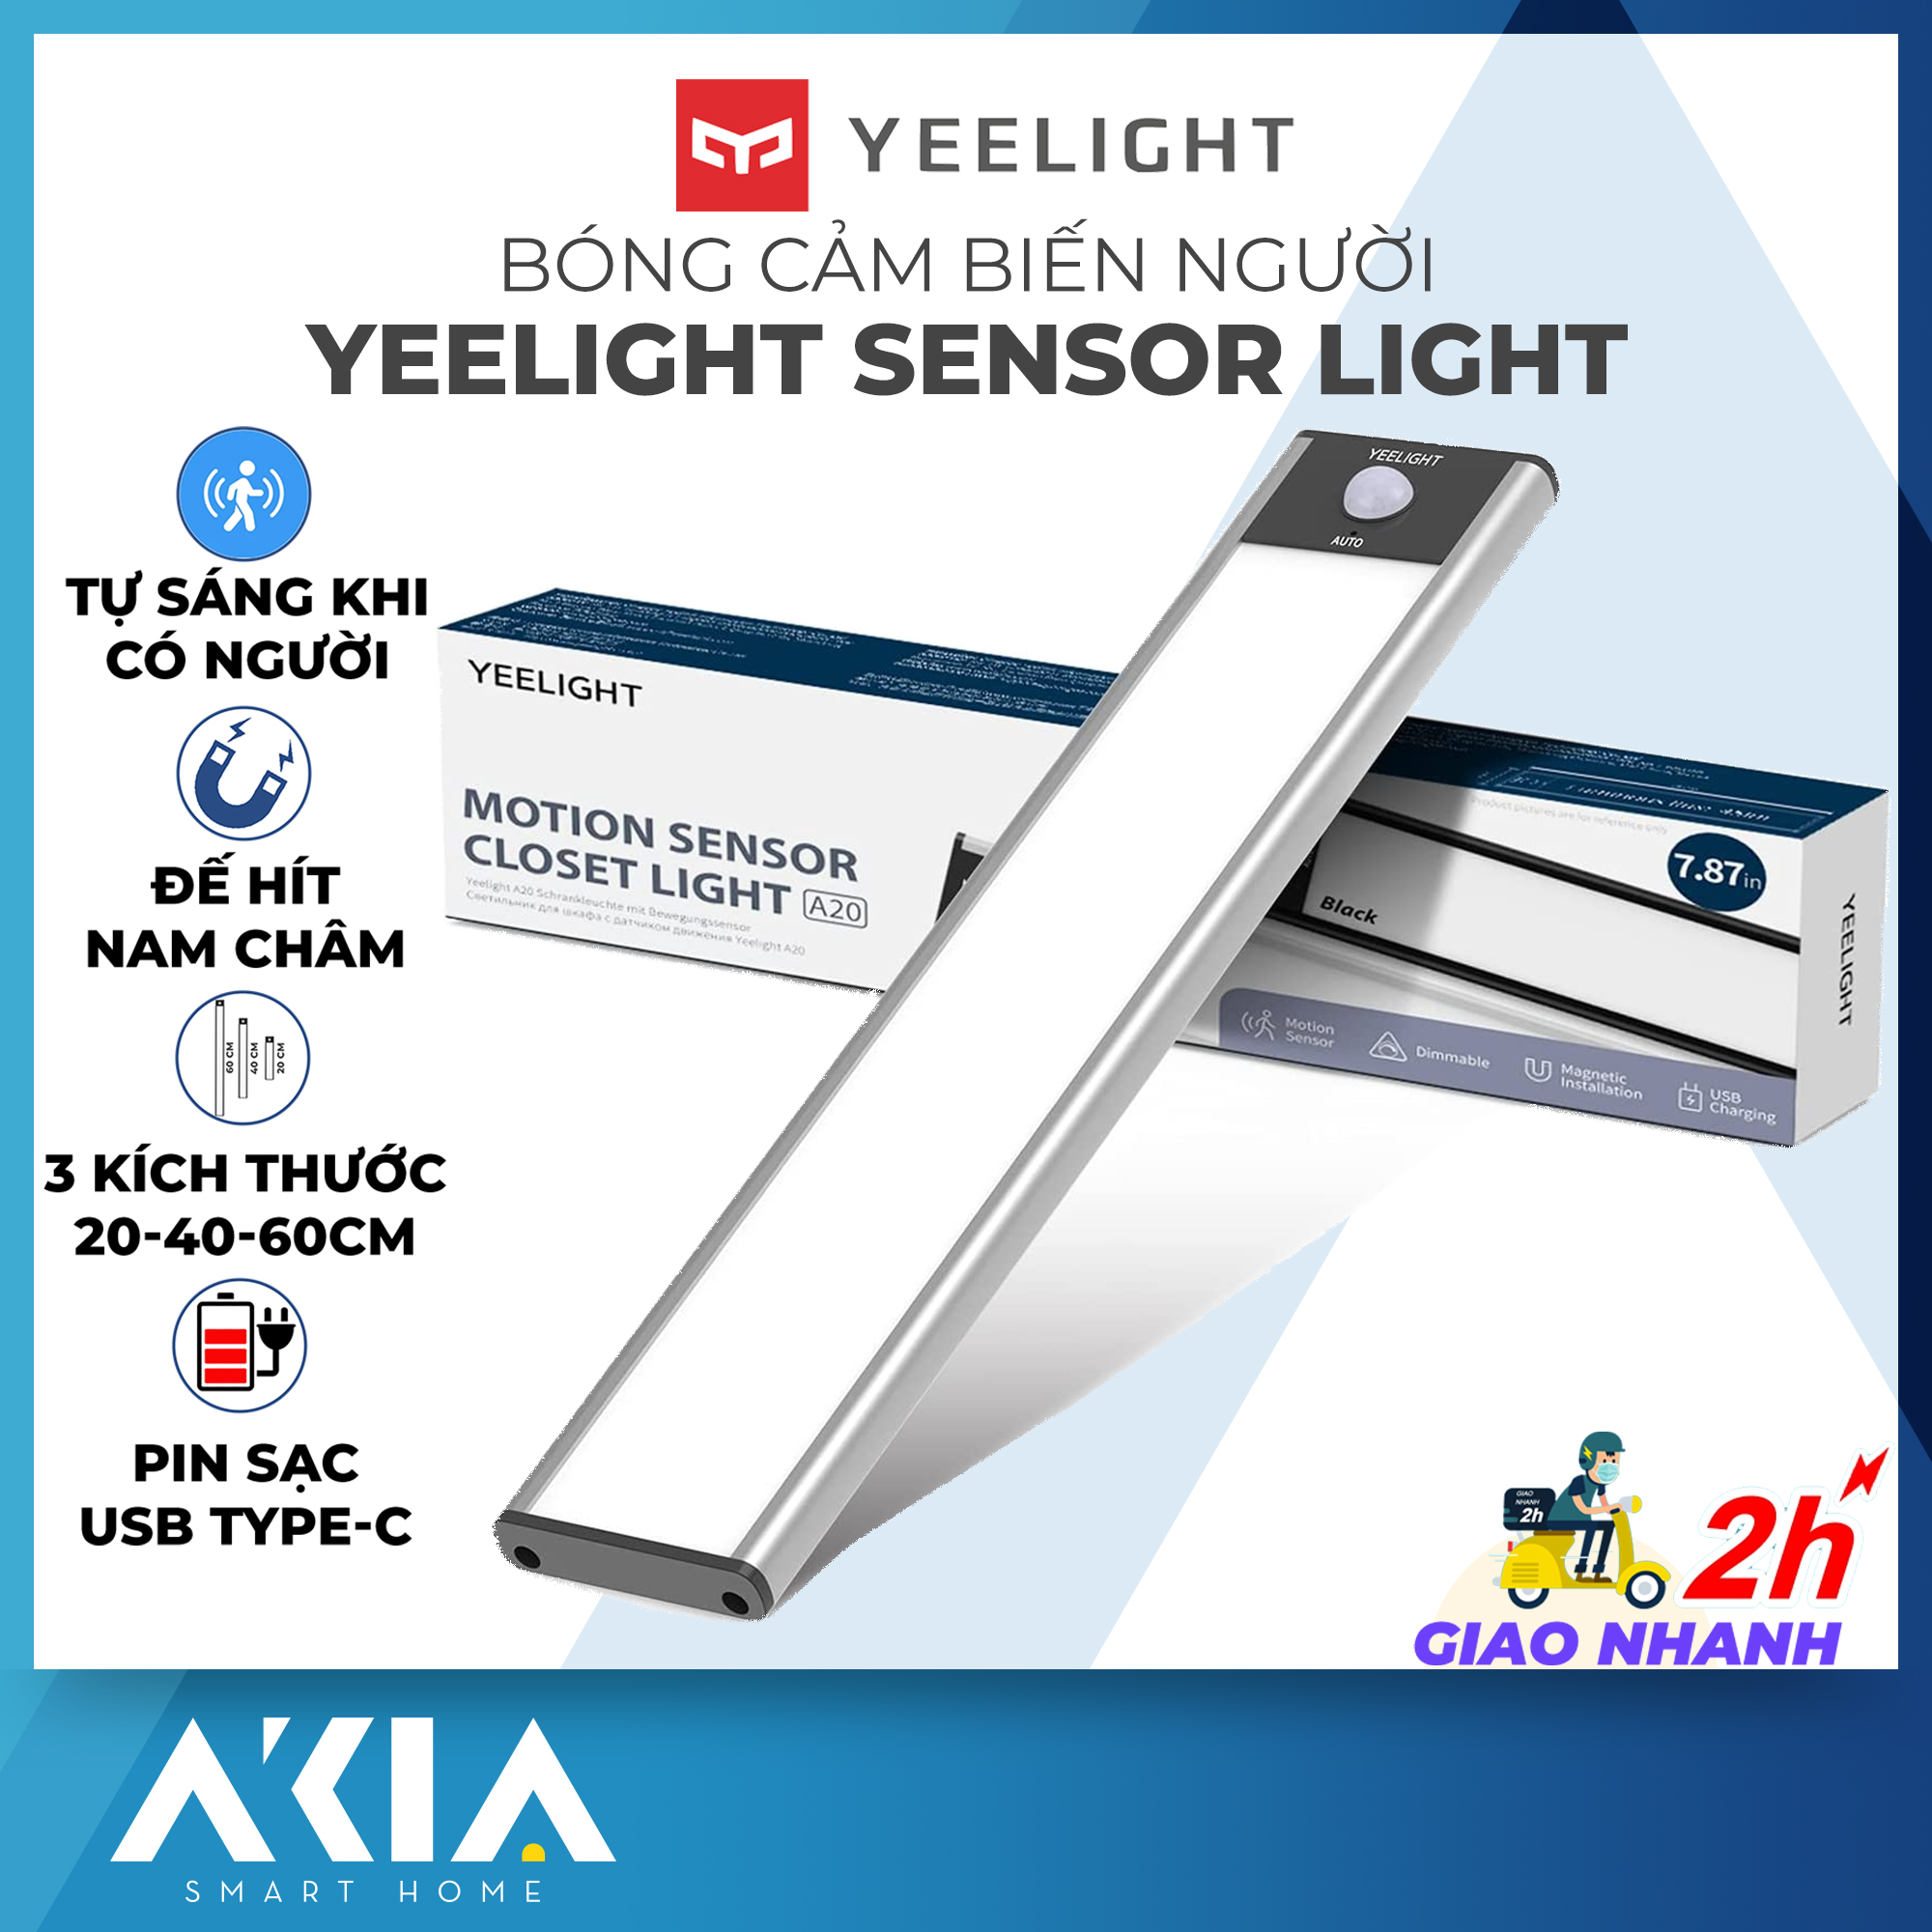 Đèn cảm biến Yeelight Sensor Cabinet Light - Đèn led thanh 20-40-60cm